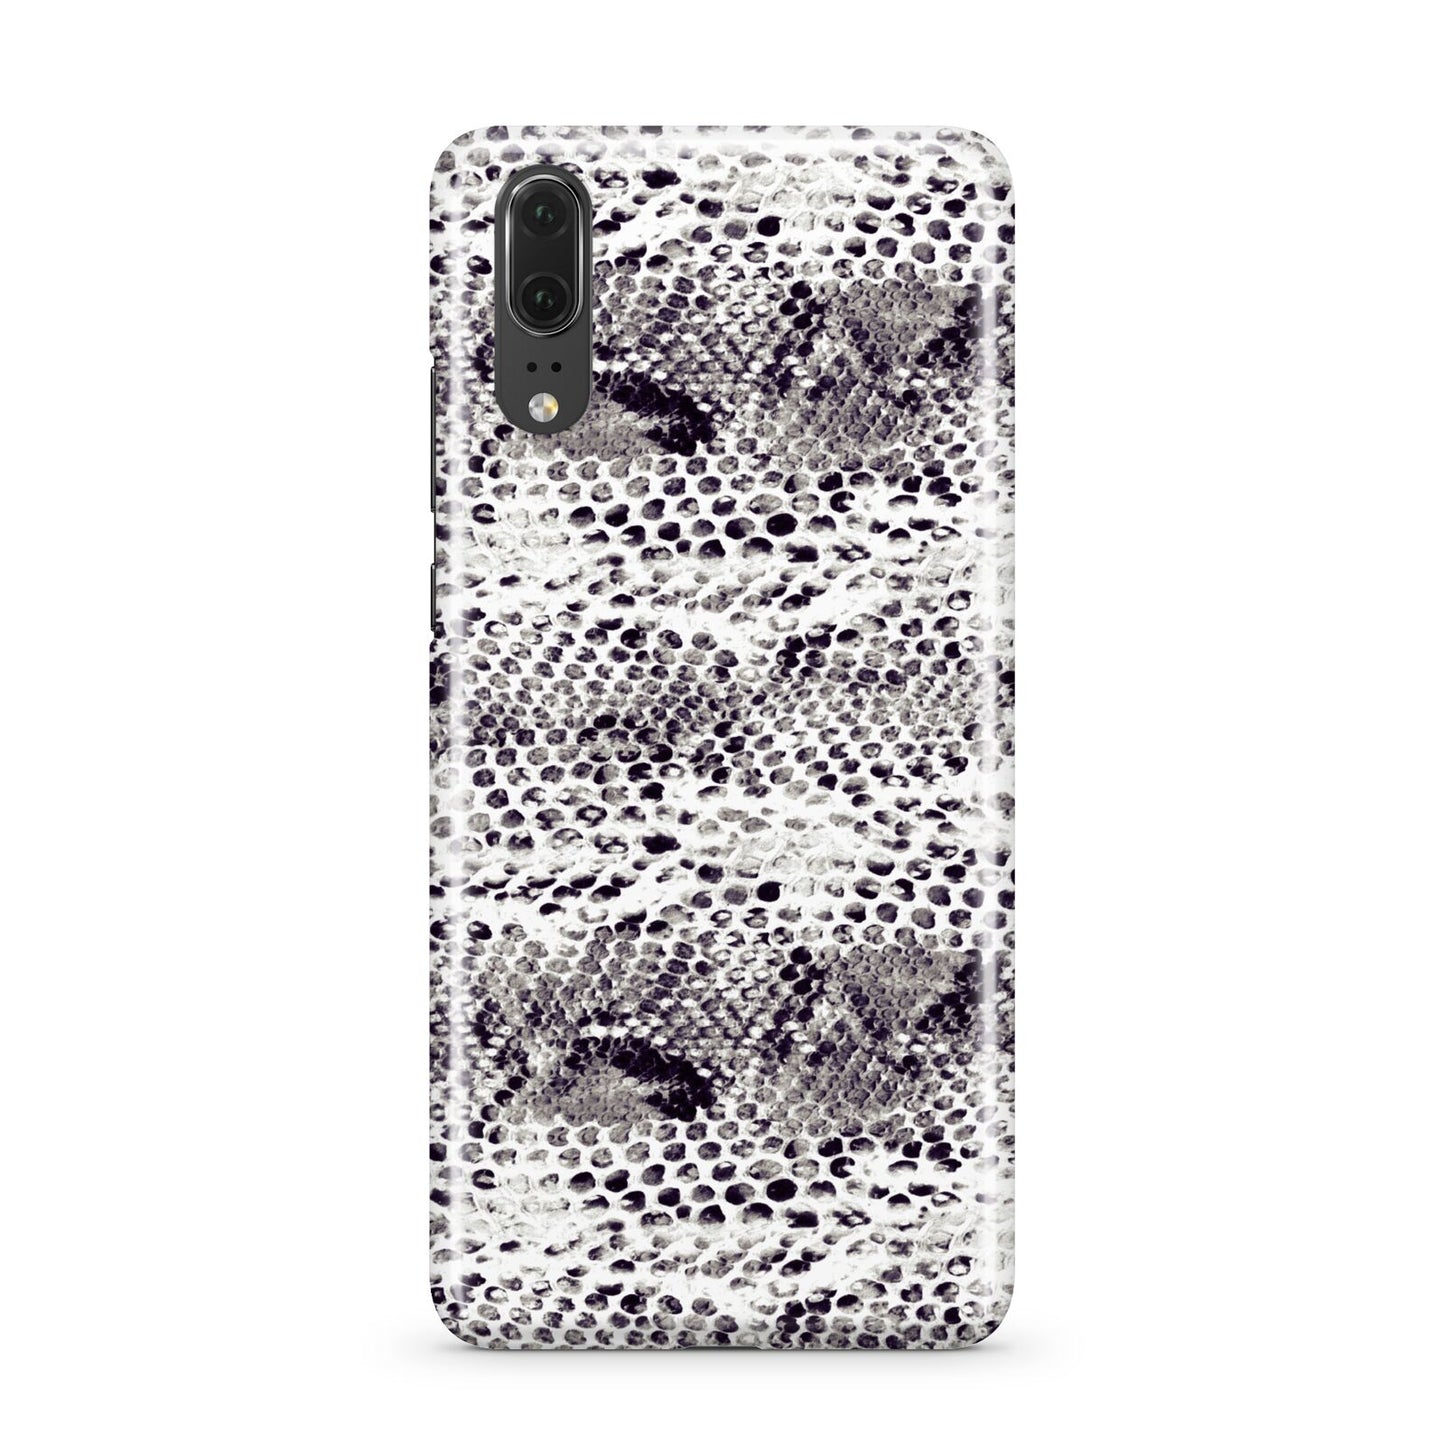 Textured Snakeskin Huawei P20 Phone Case